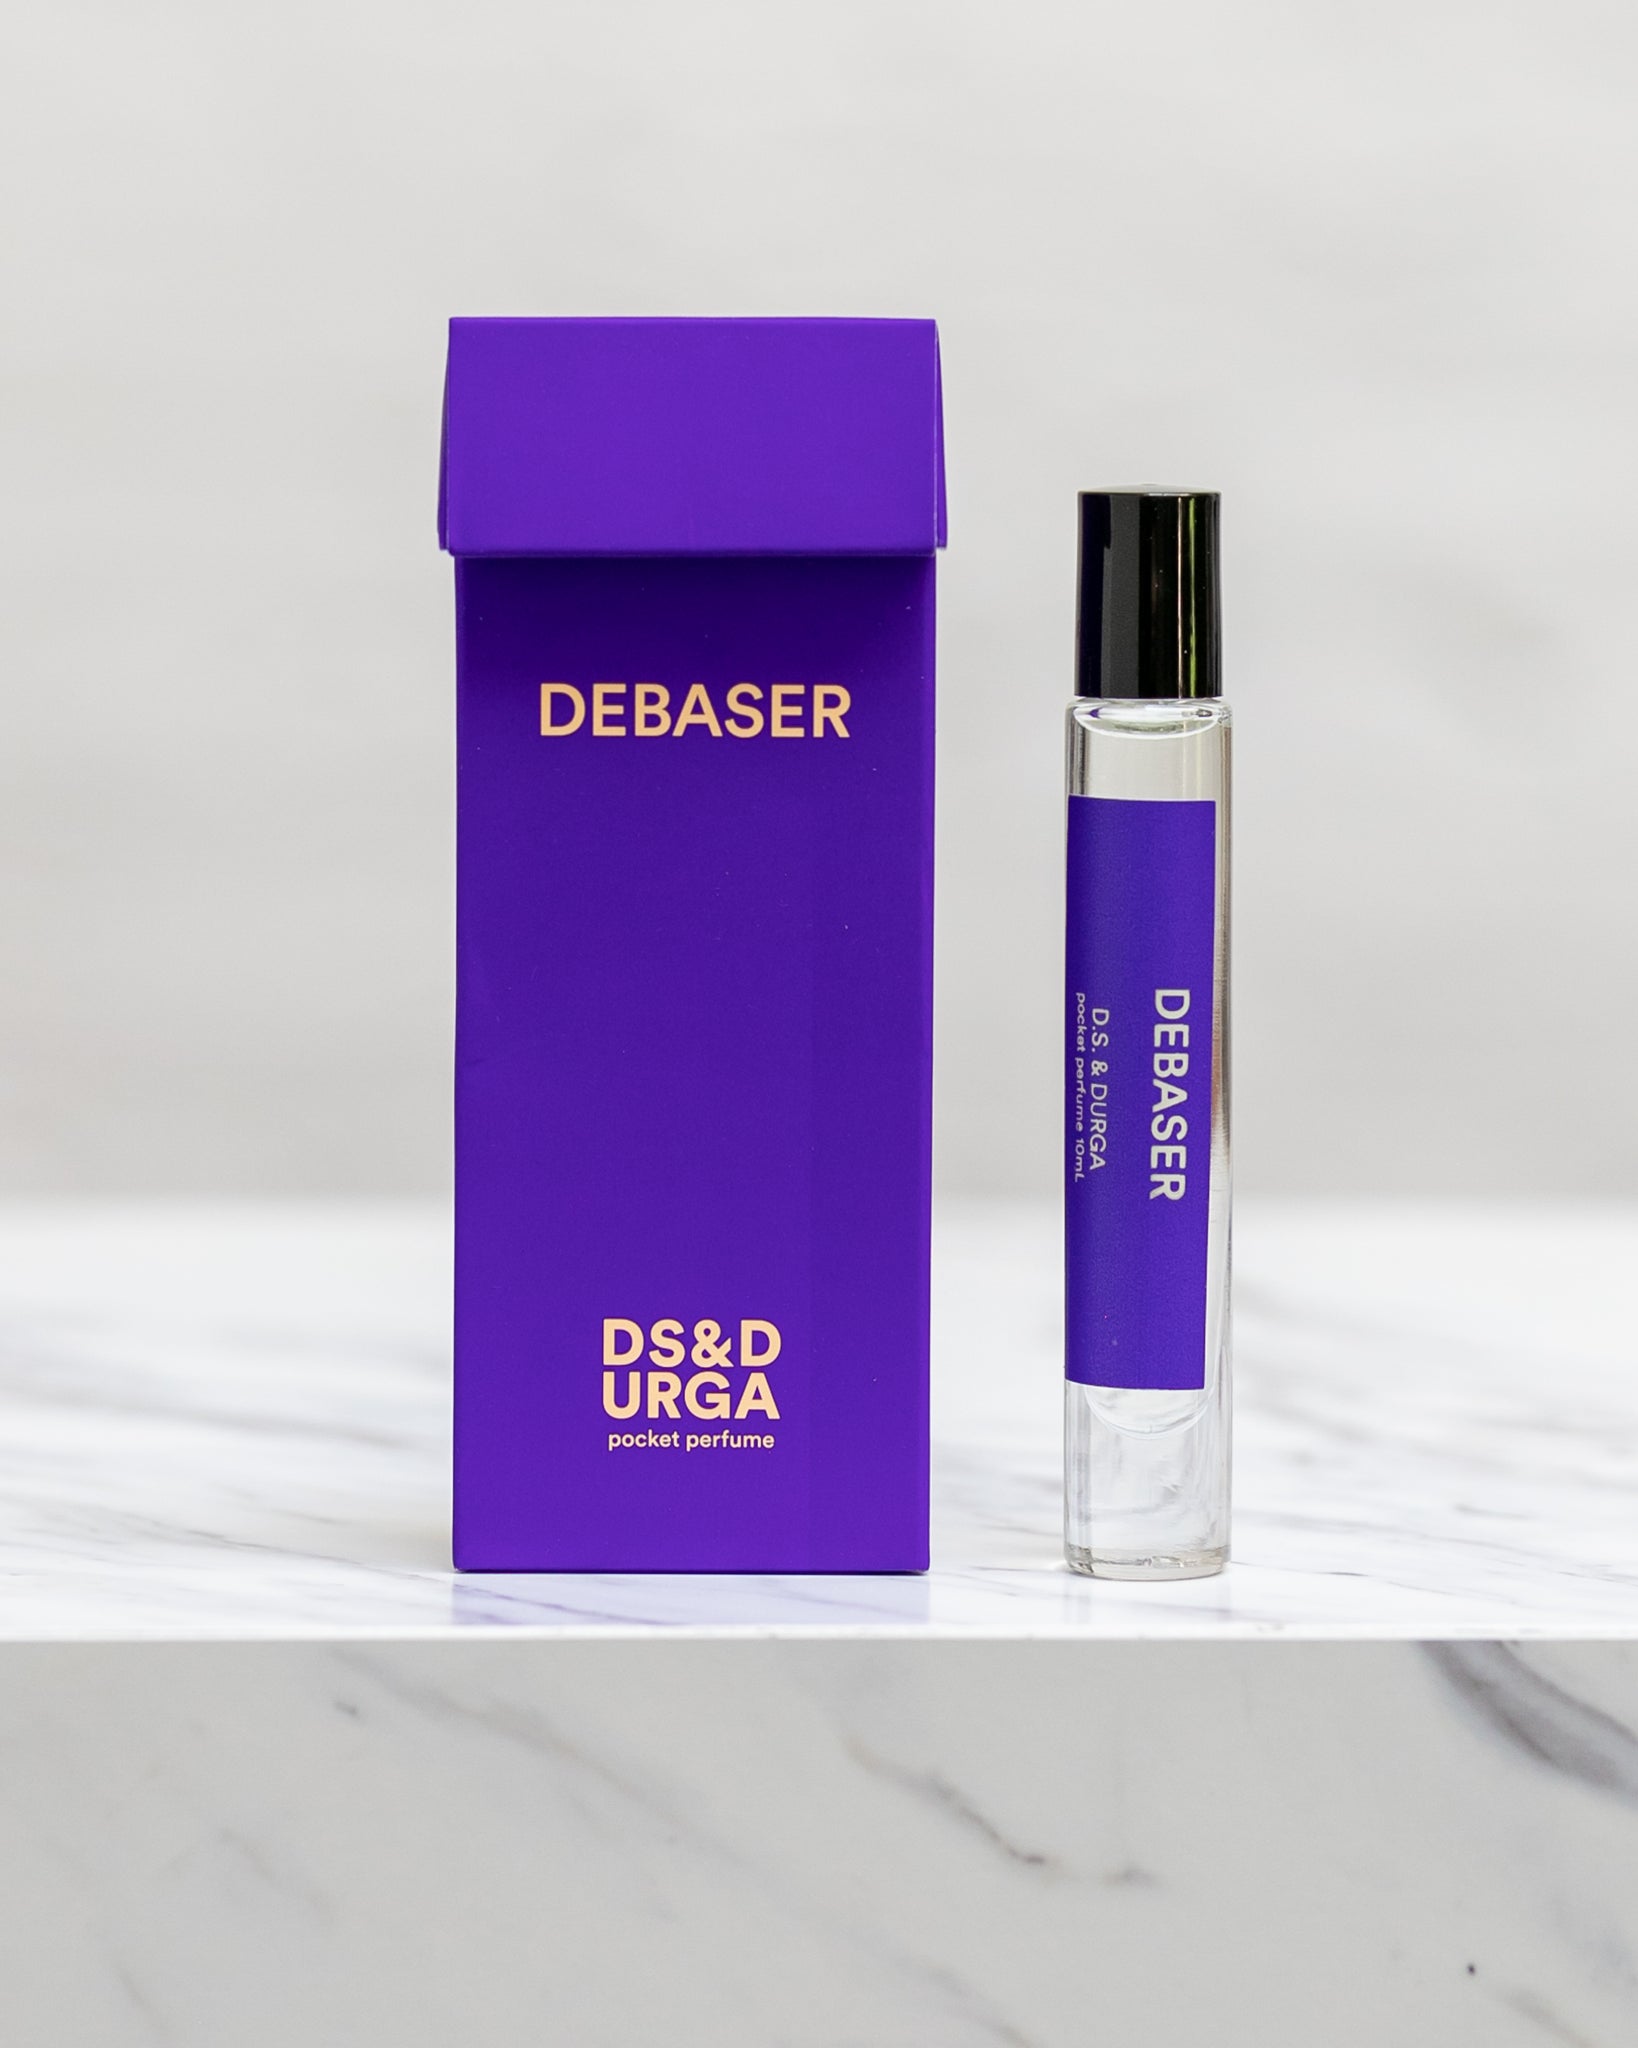 D.S. & Durga Perfume, Debaser 10ml bottle and box